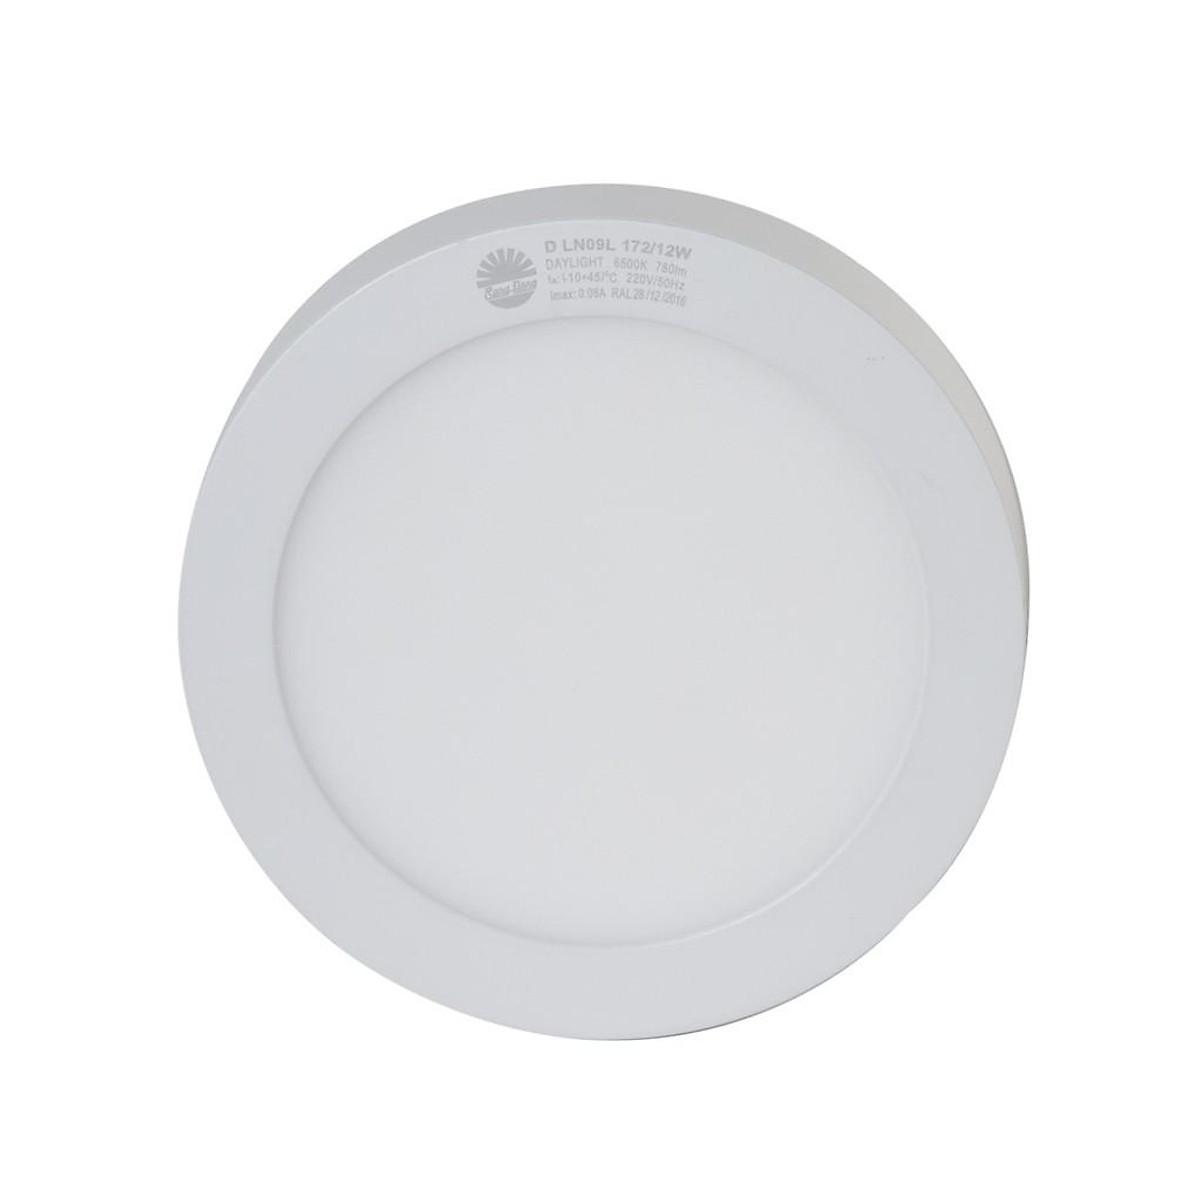 Đèn LED ốp trần 12W Rạng Đông Model: D LN09L 172/12W - Ánh sáng trắng